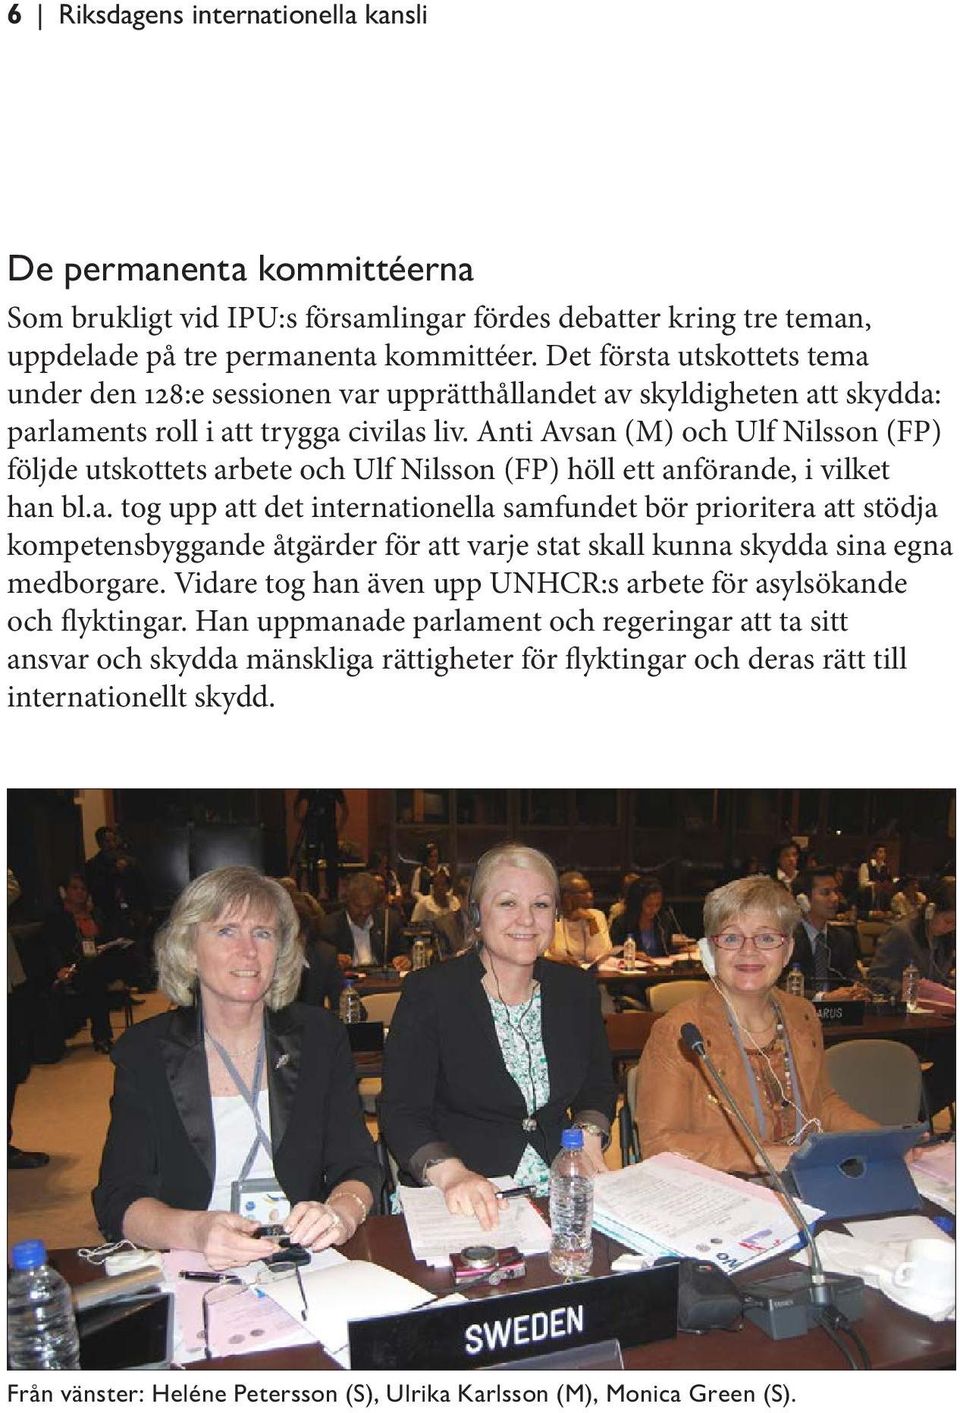 Anti Avsan (M) och Ulf Nilsson (FP) följde utskottets arbete och Ulf Nilsson (FP) höll ett anförande, i vilket han bl.a. tog upp att det internationella samfundet bör prioritera att stödja kompetensbyggande åtgärder för att varje stat skall kunna skydda sina egna medborgare.